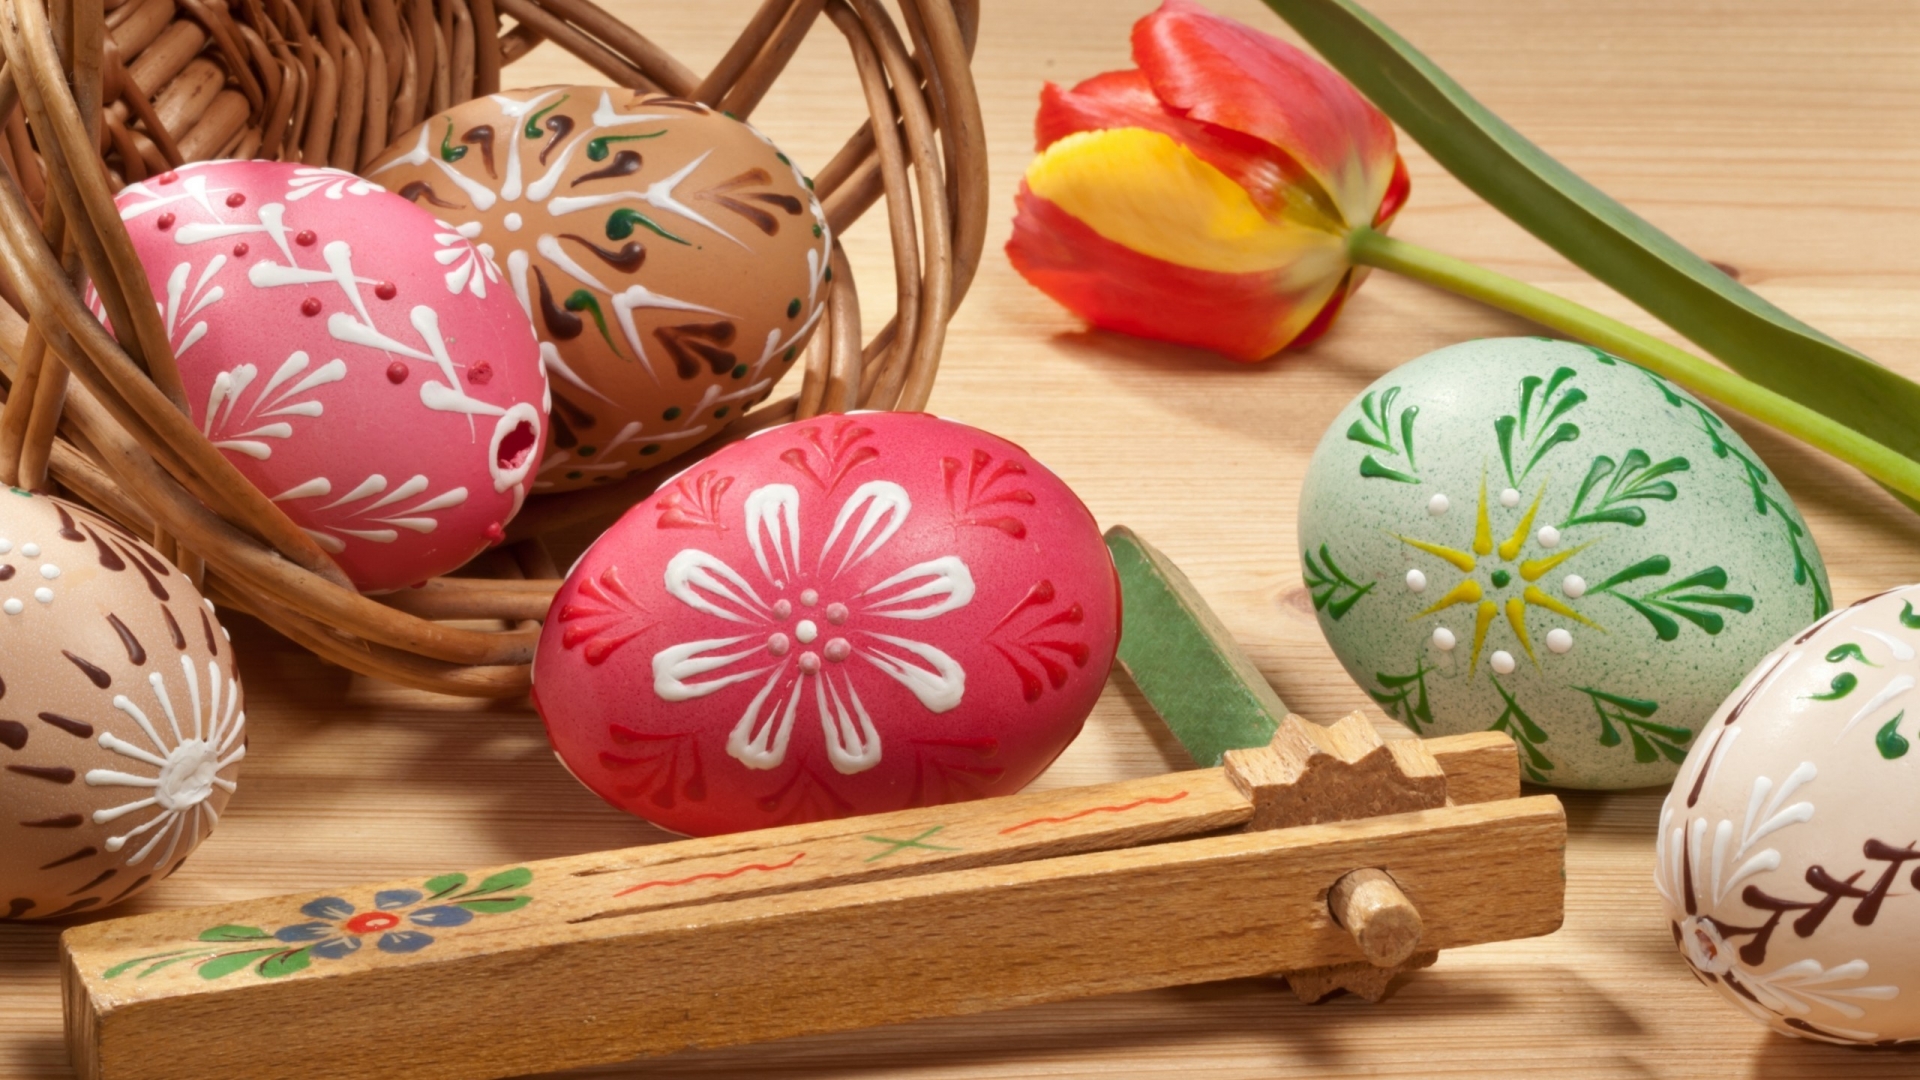 Lovely Painted Easter Eggs for 1920 x 1080 HDTV 1080p resolution